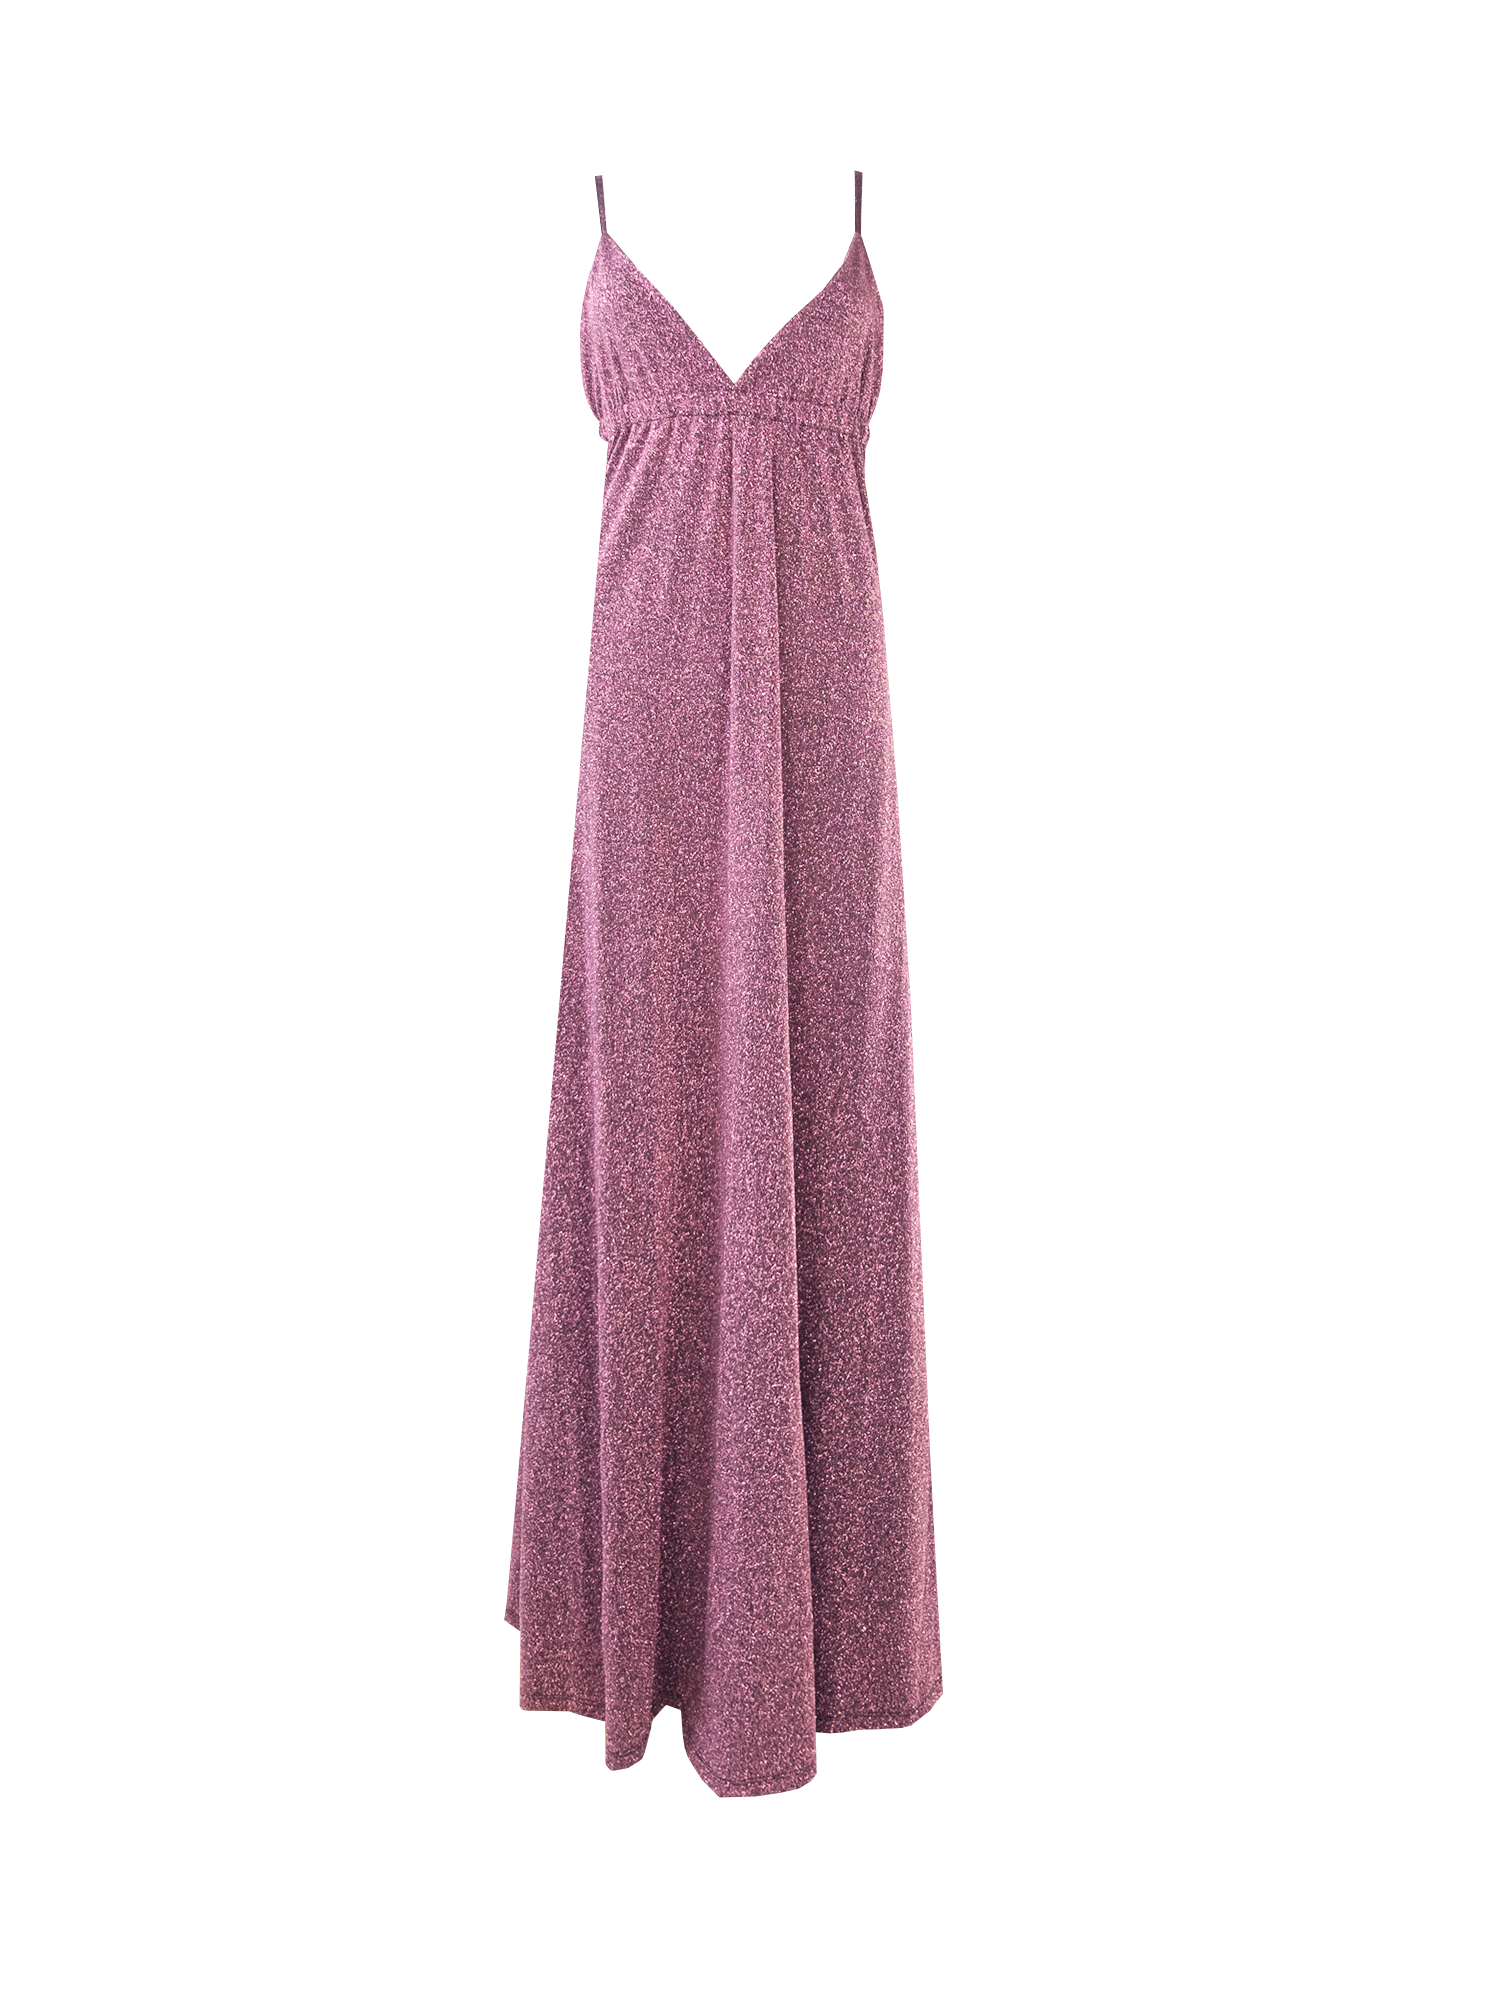 MICOL - long pink lurex dress